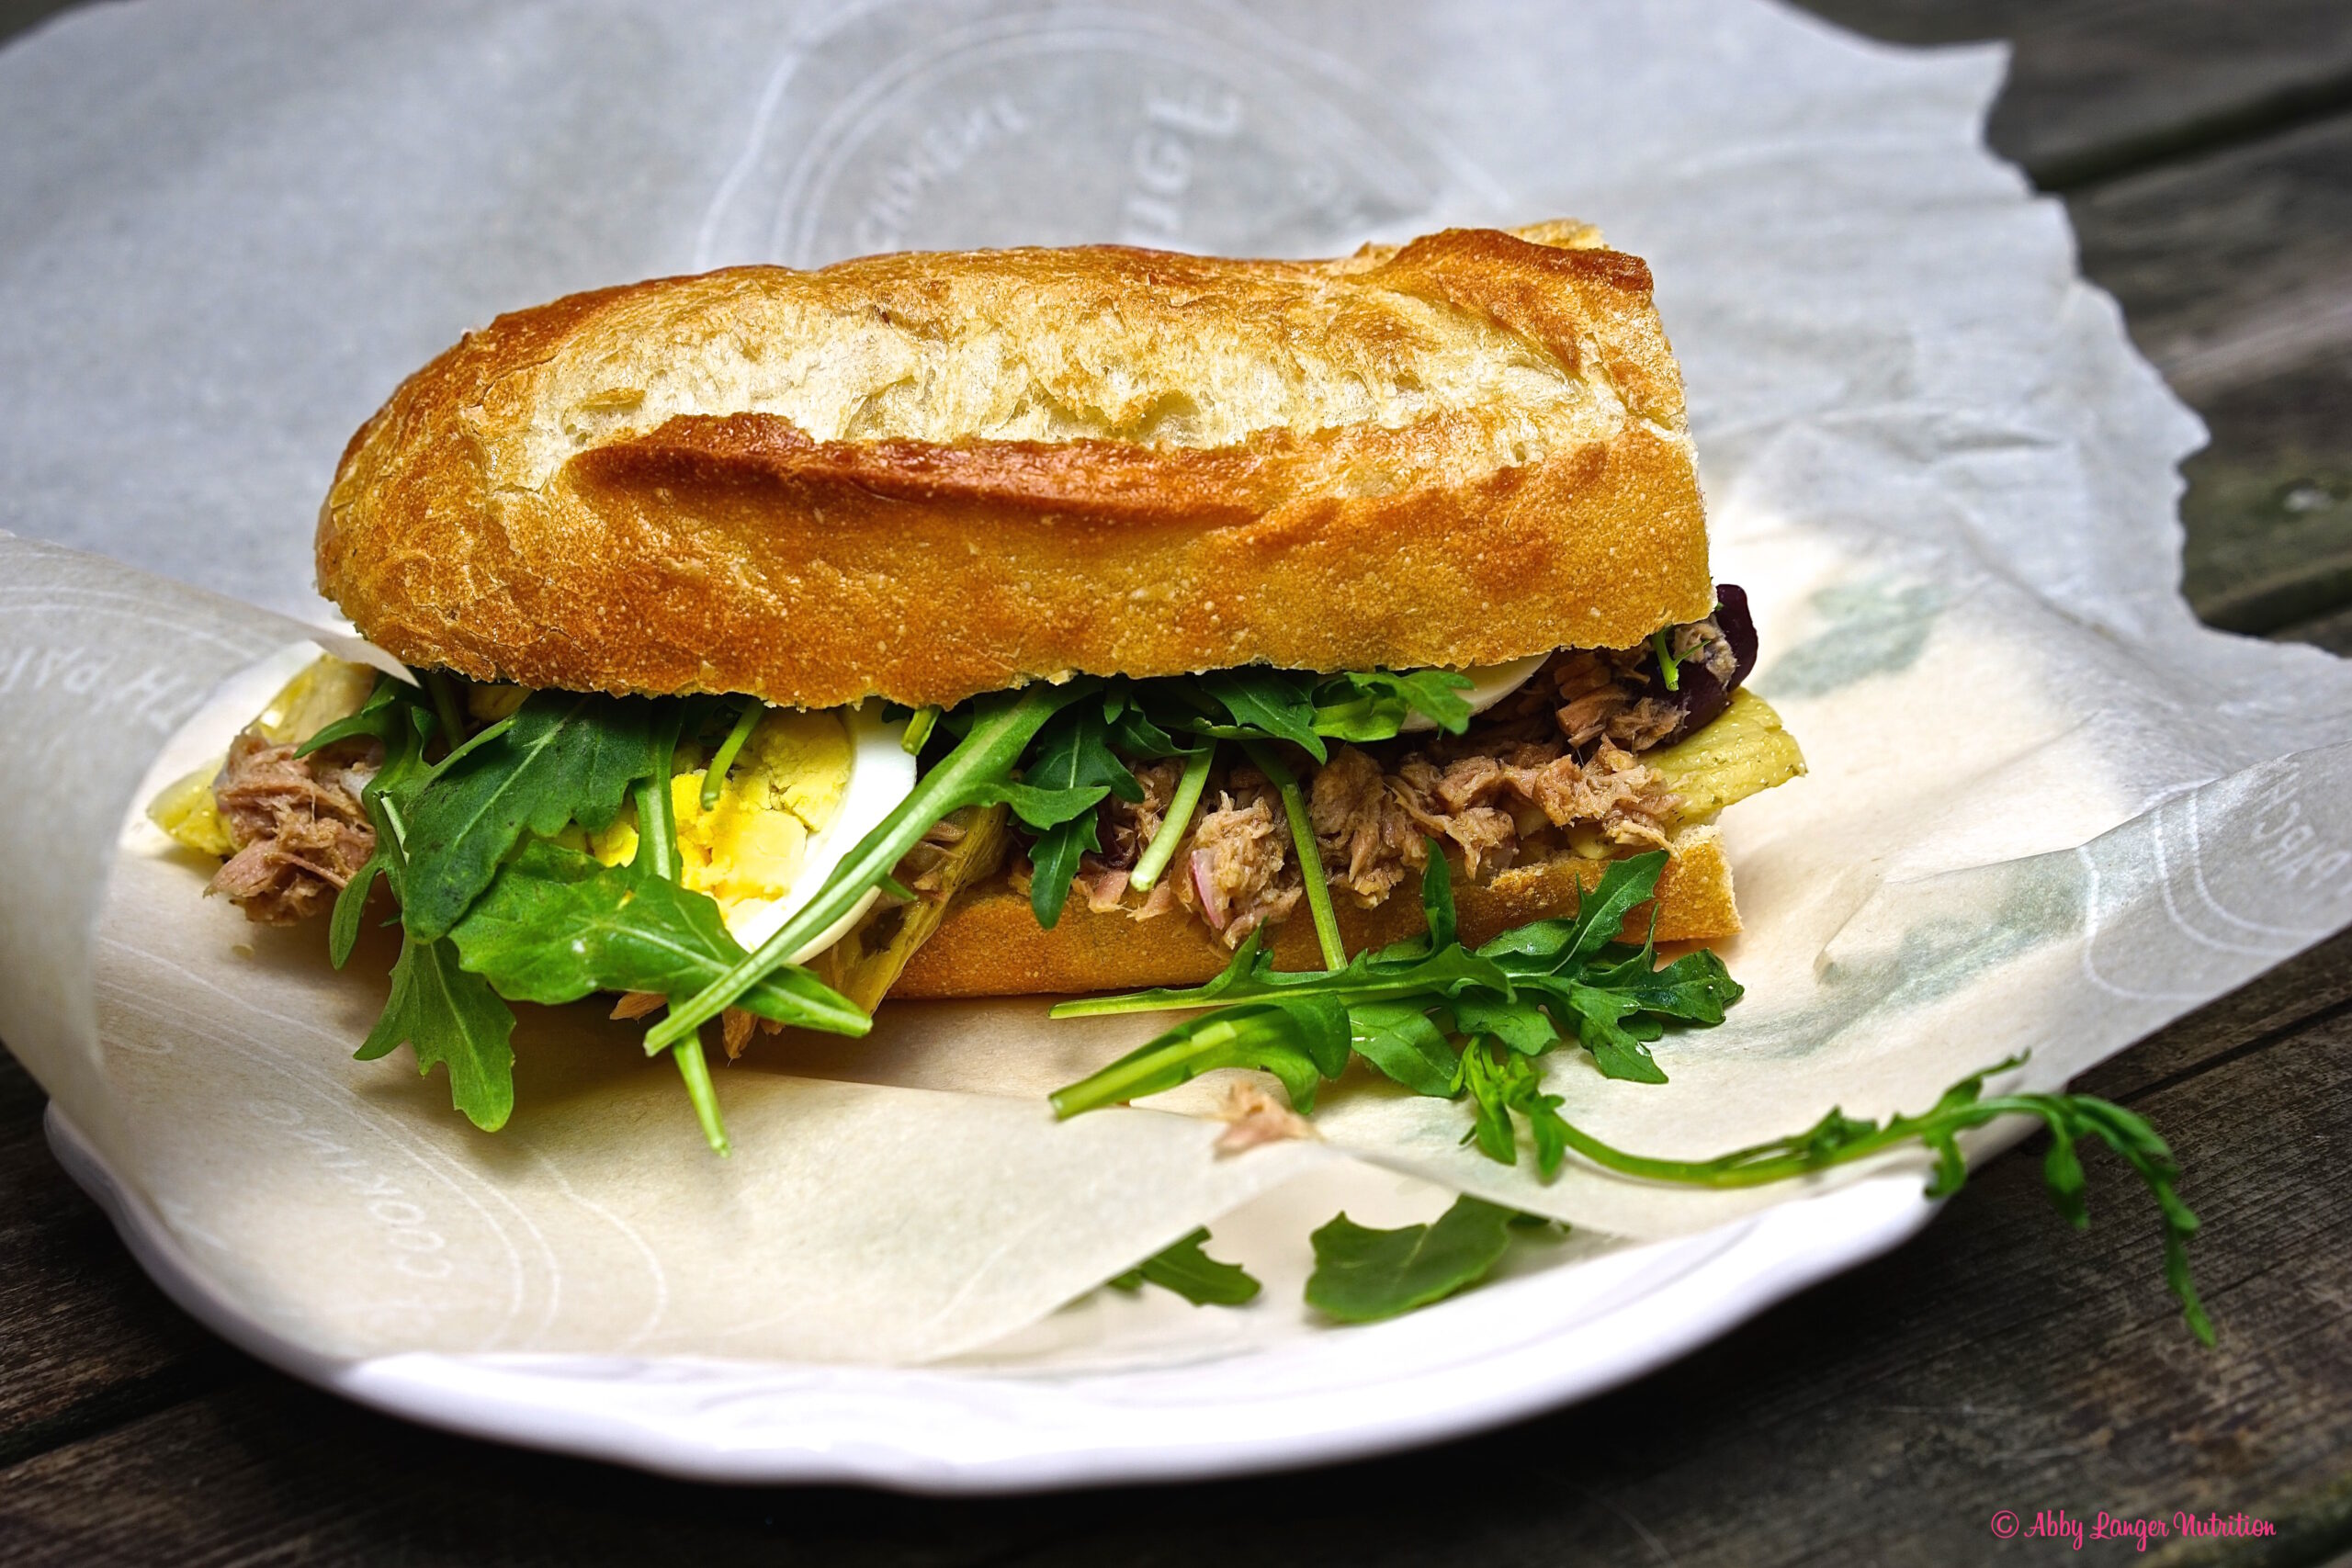 The Pan Bagnat - A Nicoise Salad on a Sandwich